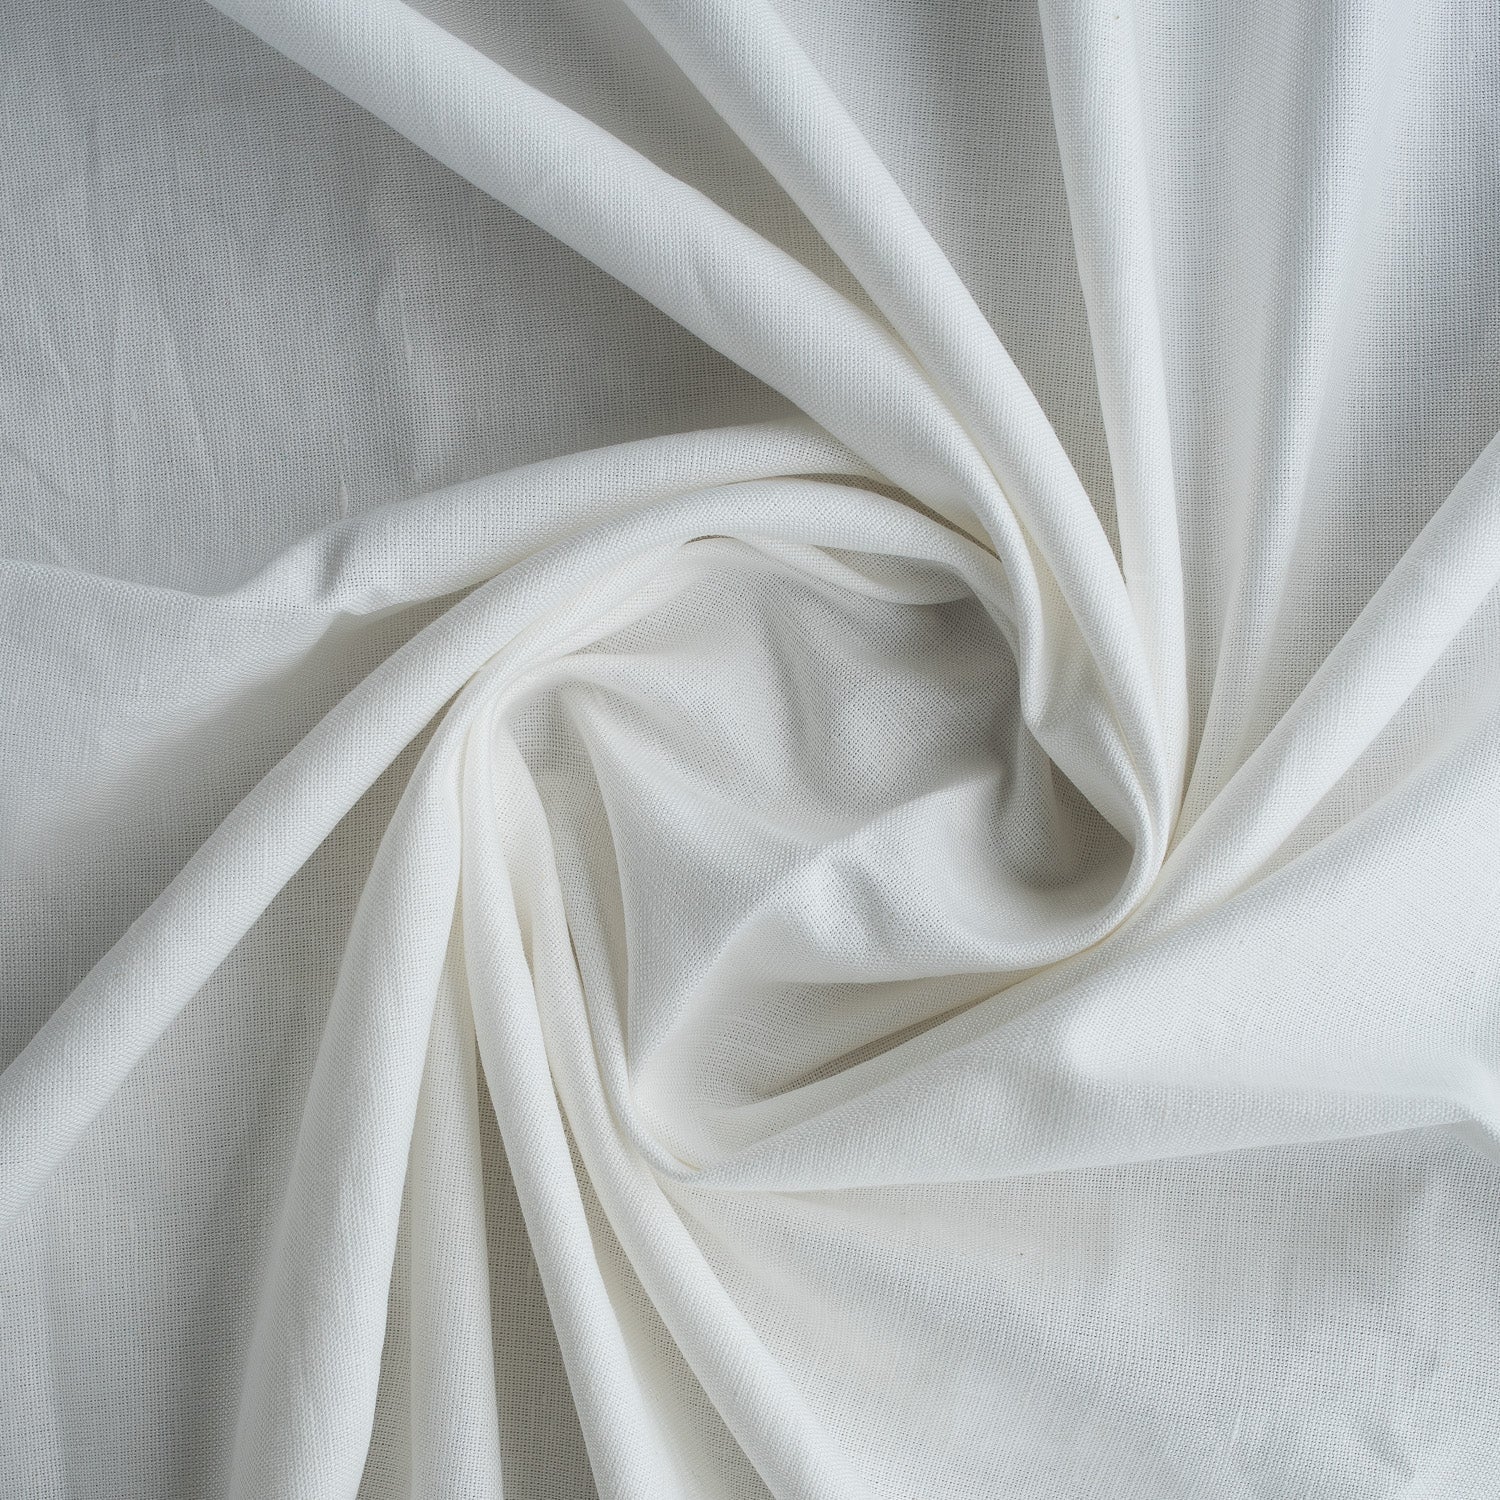 Crisp White Linen Blend Fabric